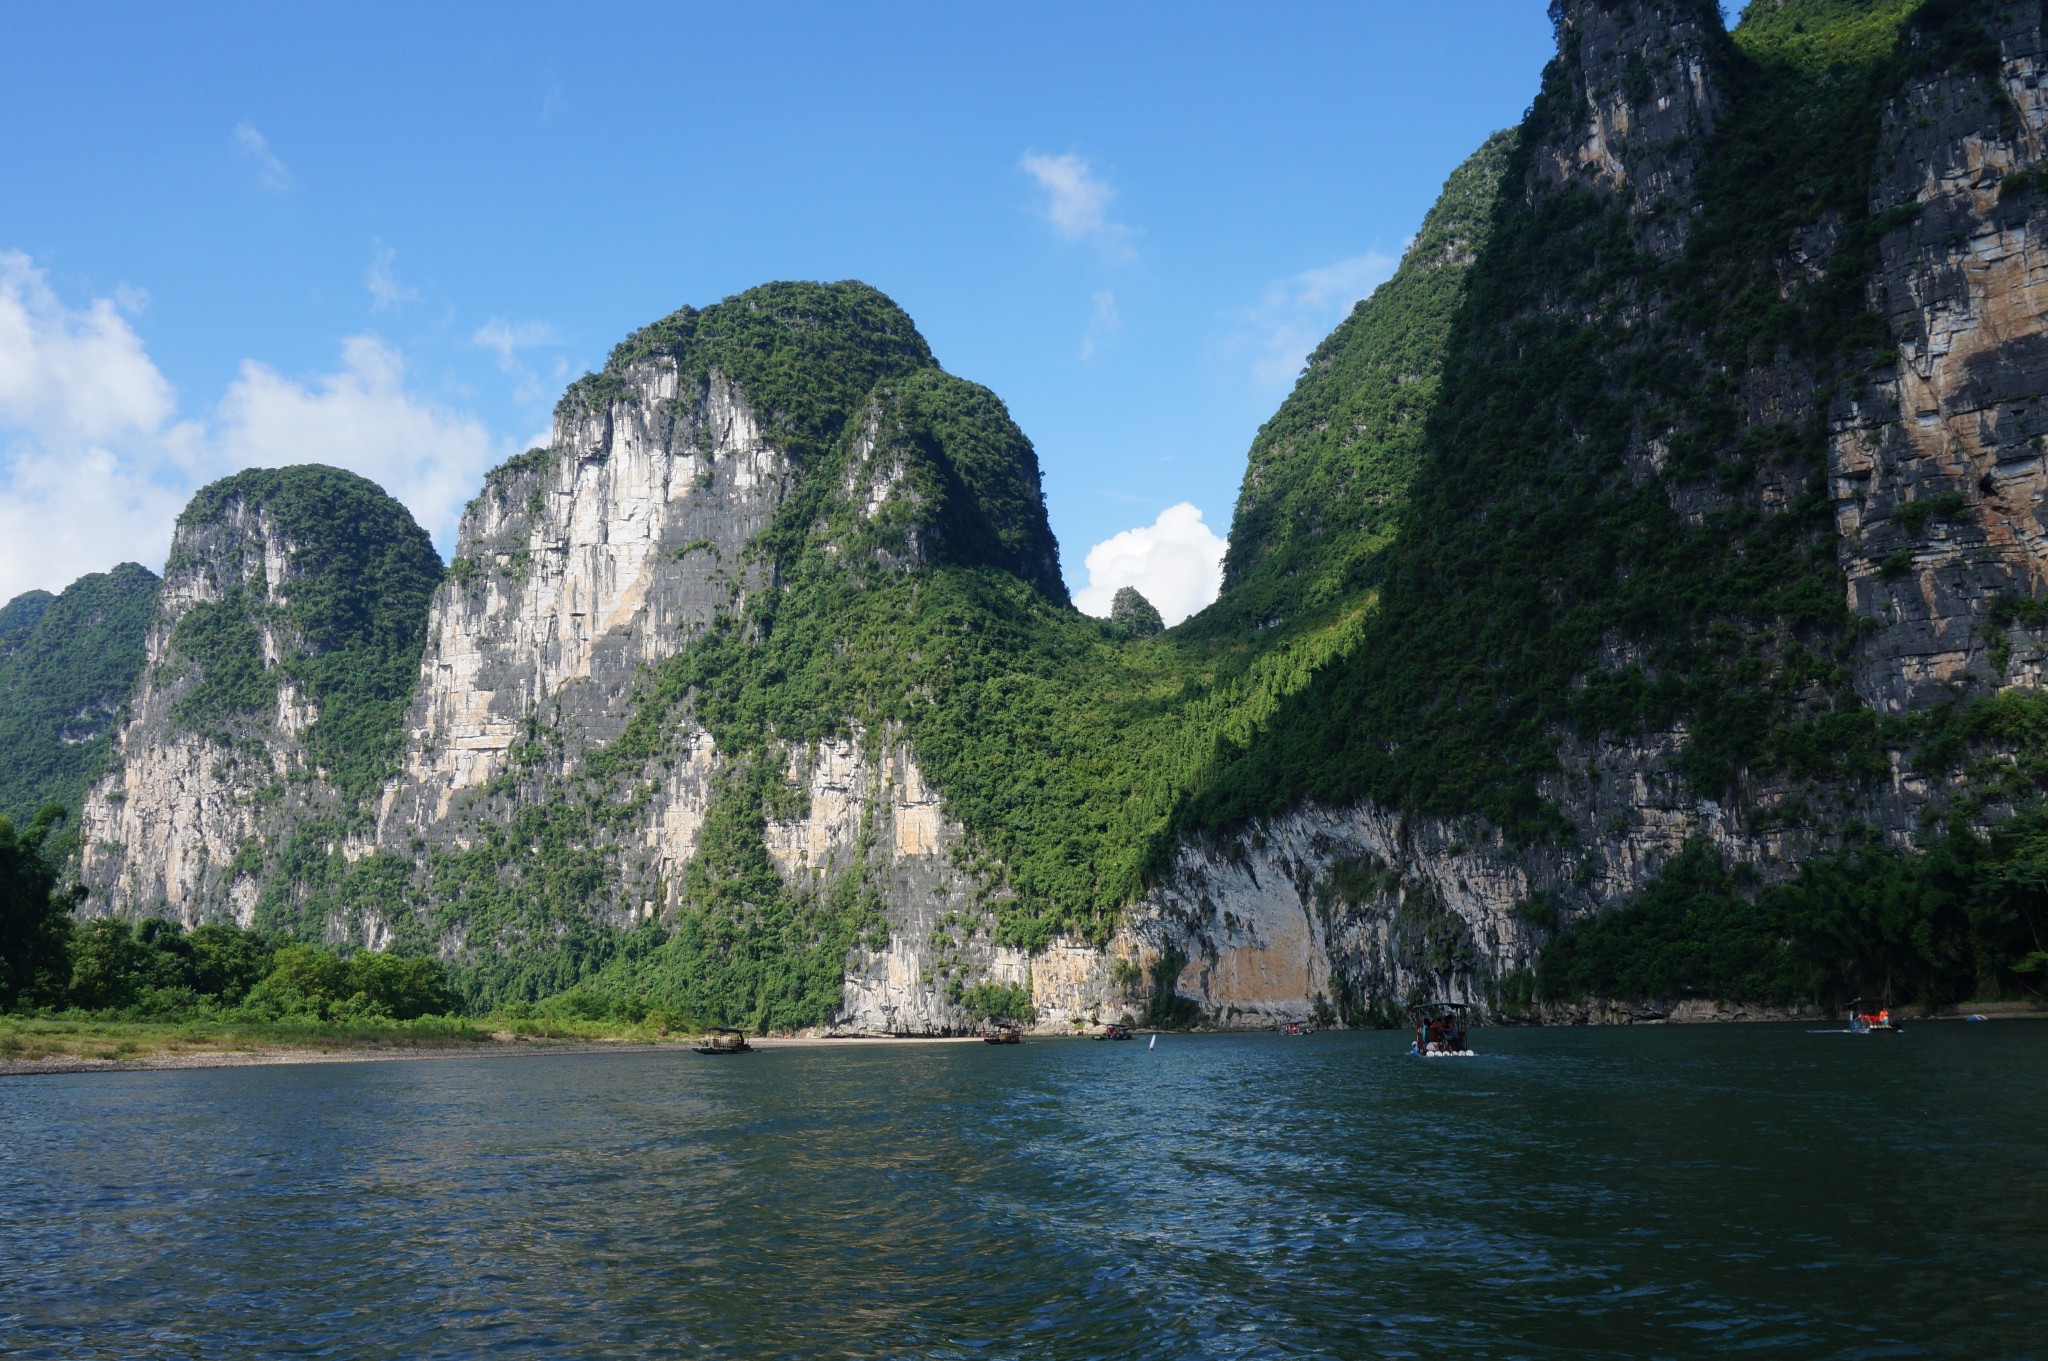  Guilin Li River Raft Tour